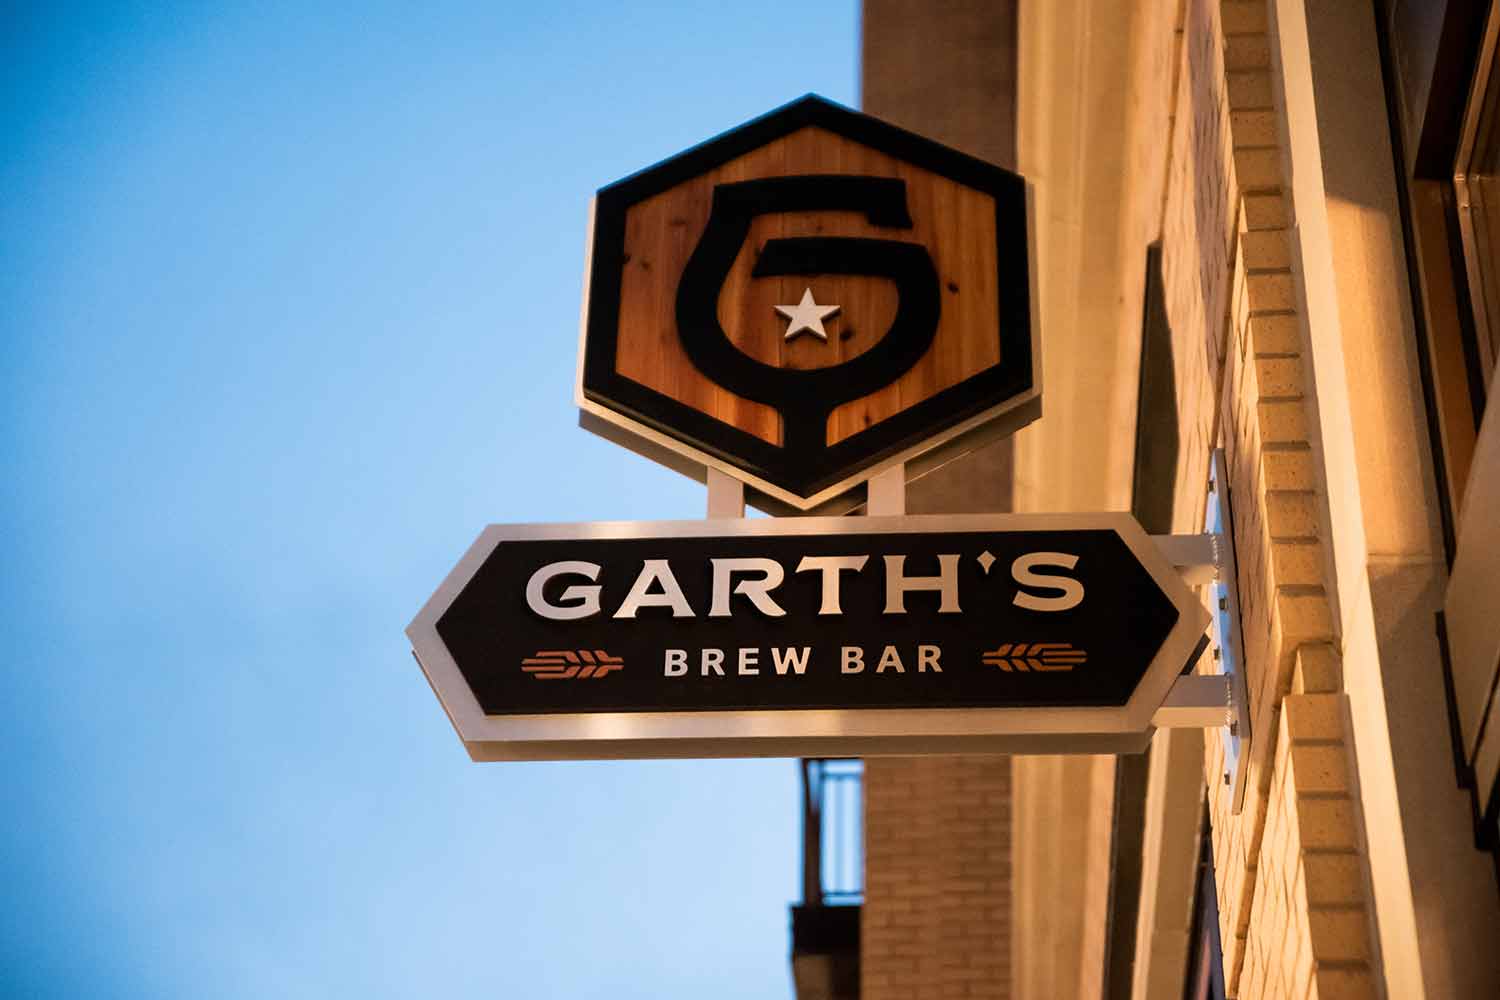 Exterior sign at Garth's Brew Bar